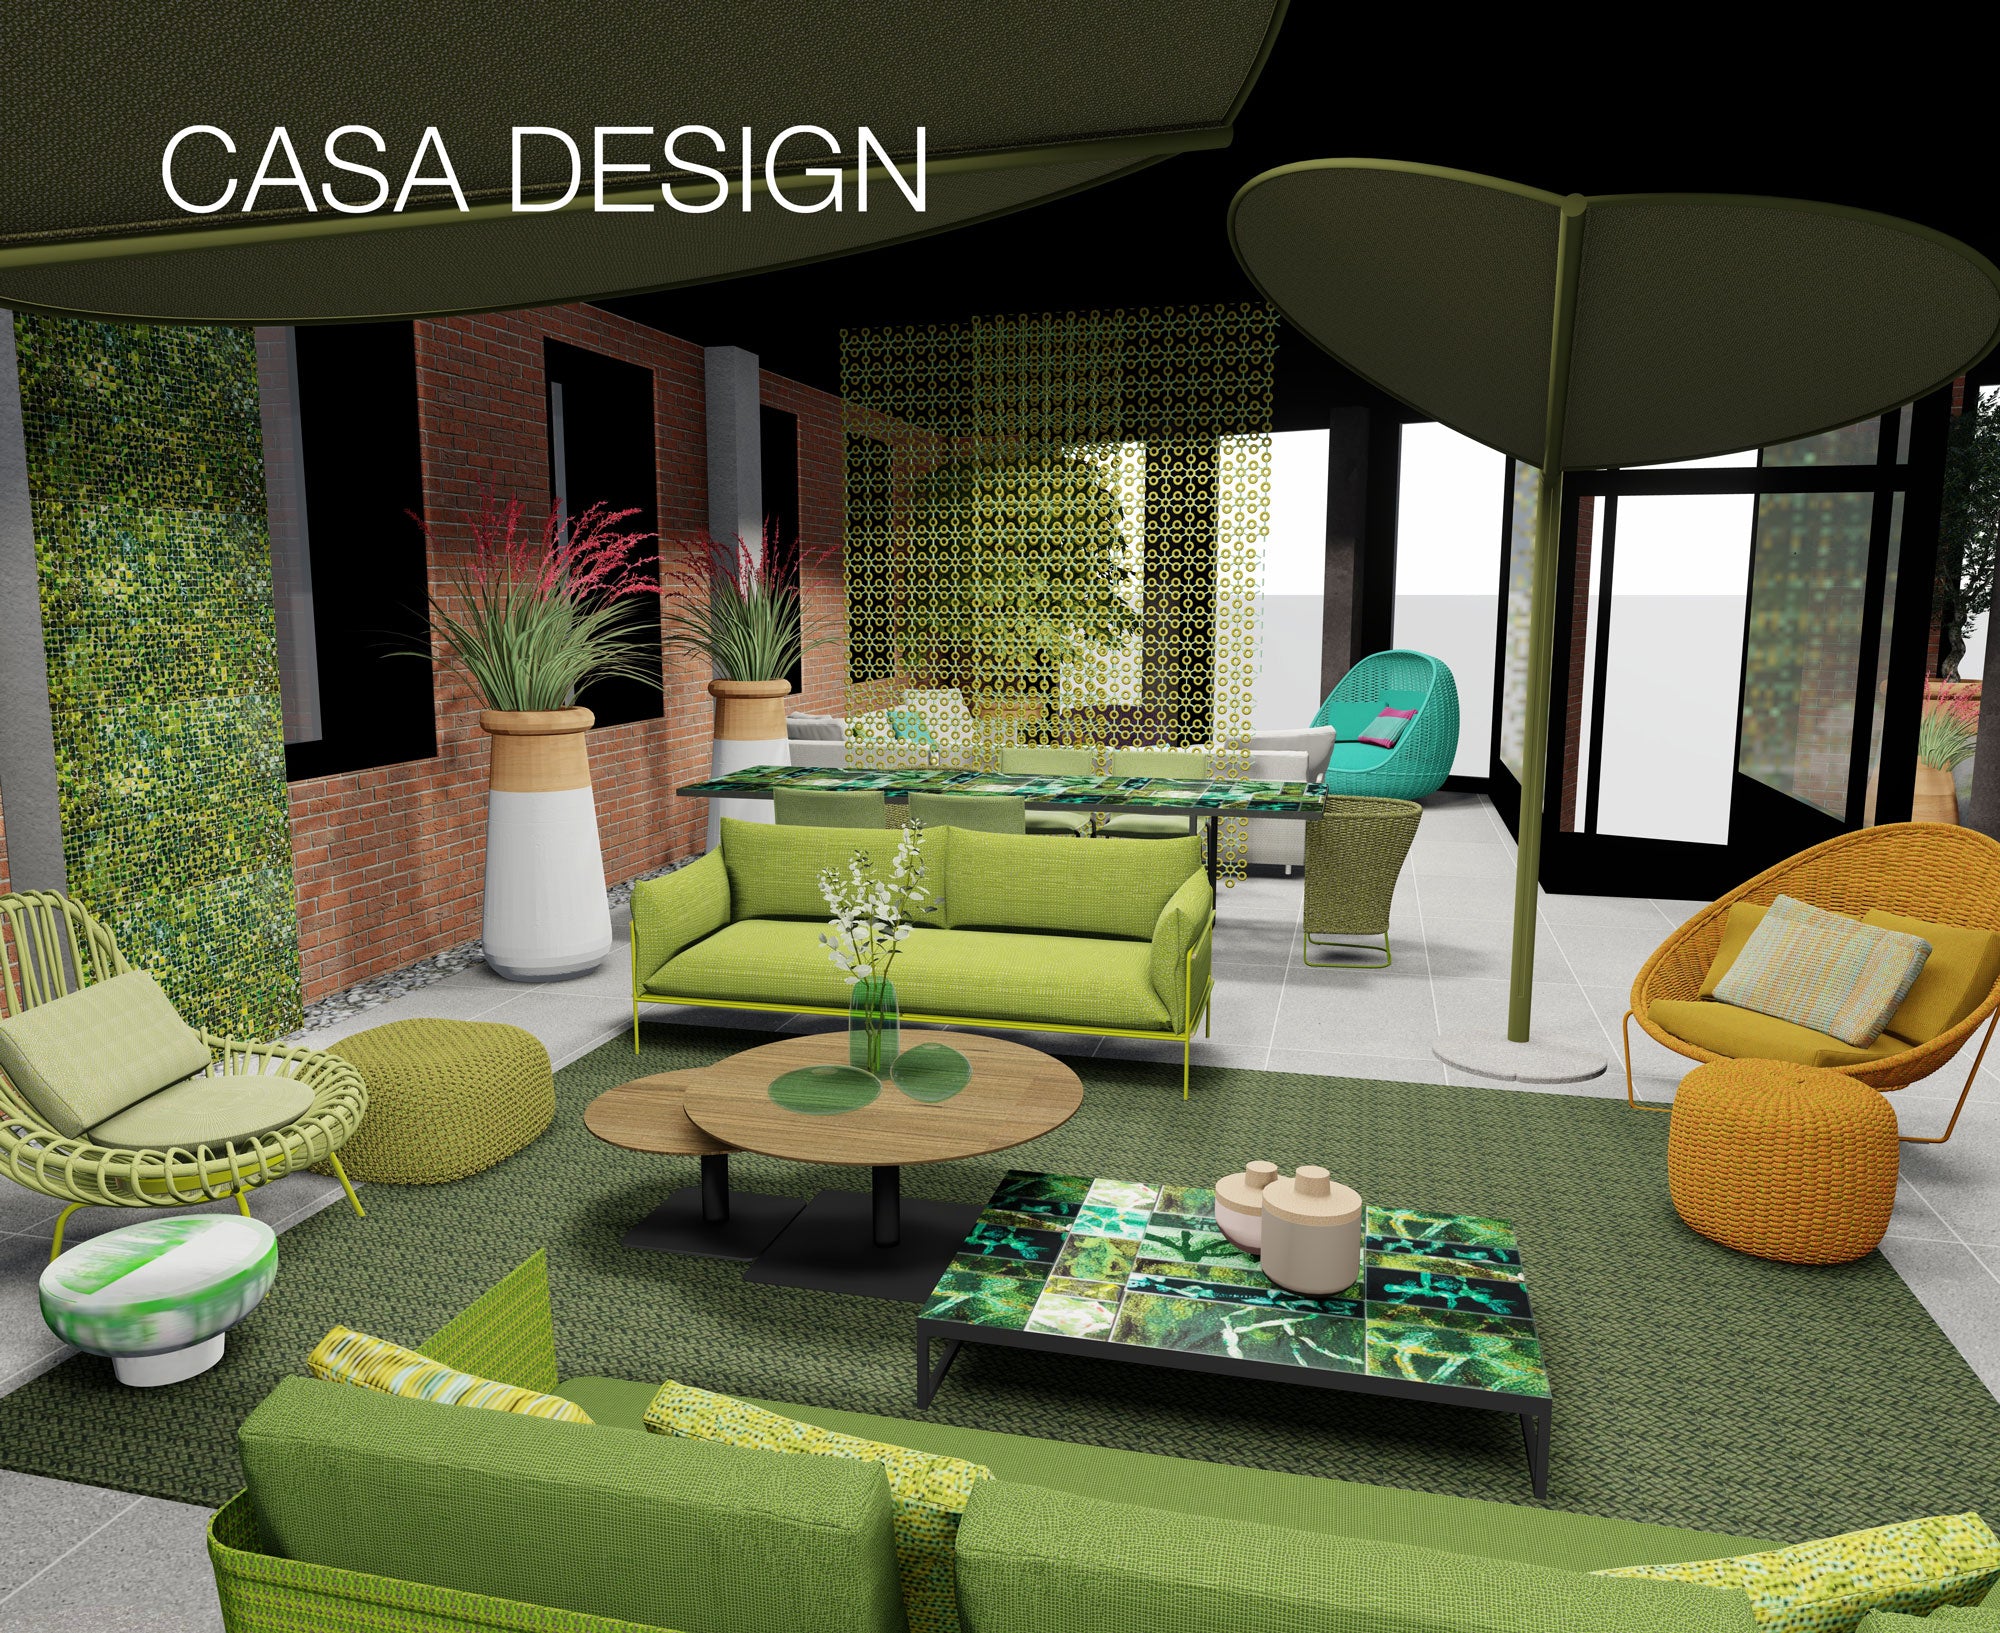 Casa Design to Open New Outdoor Showroom in Spring of 2023